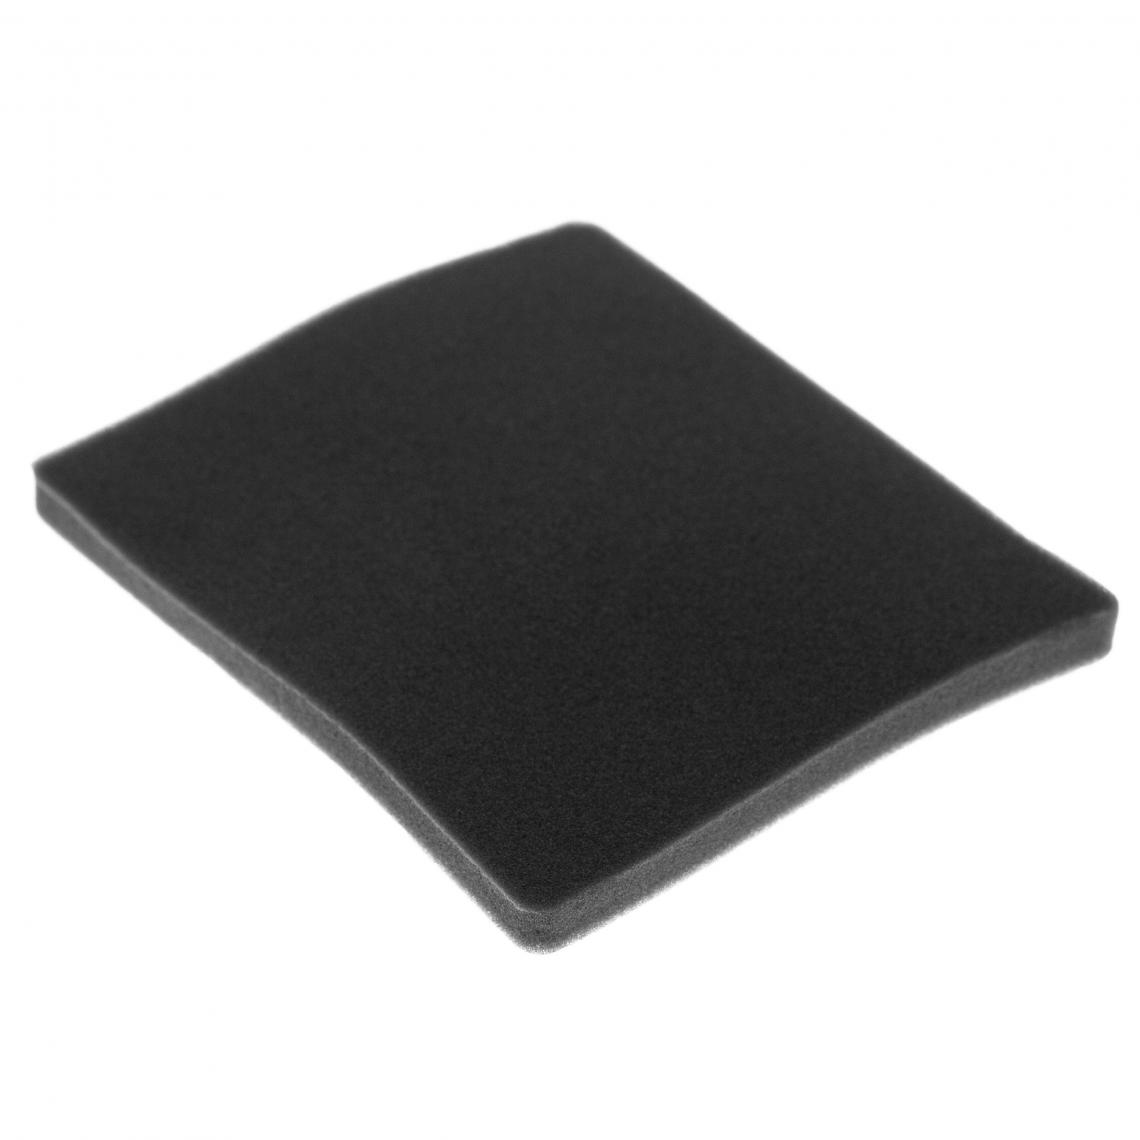 Vhbw - vhbw Filtre compatible avec Electrolux ZAM6103 CV (910286693) aspirateur - filtre de sortie d'air (filtre éponge), noir - Accessoire entretien des sols